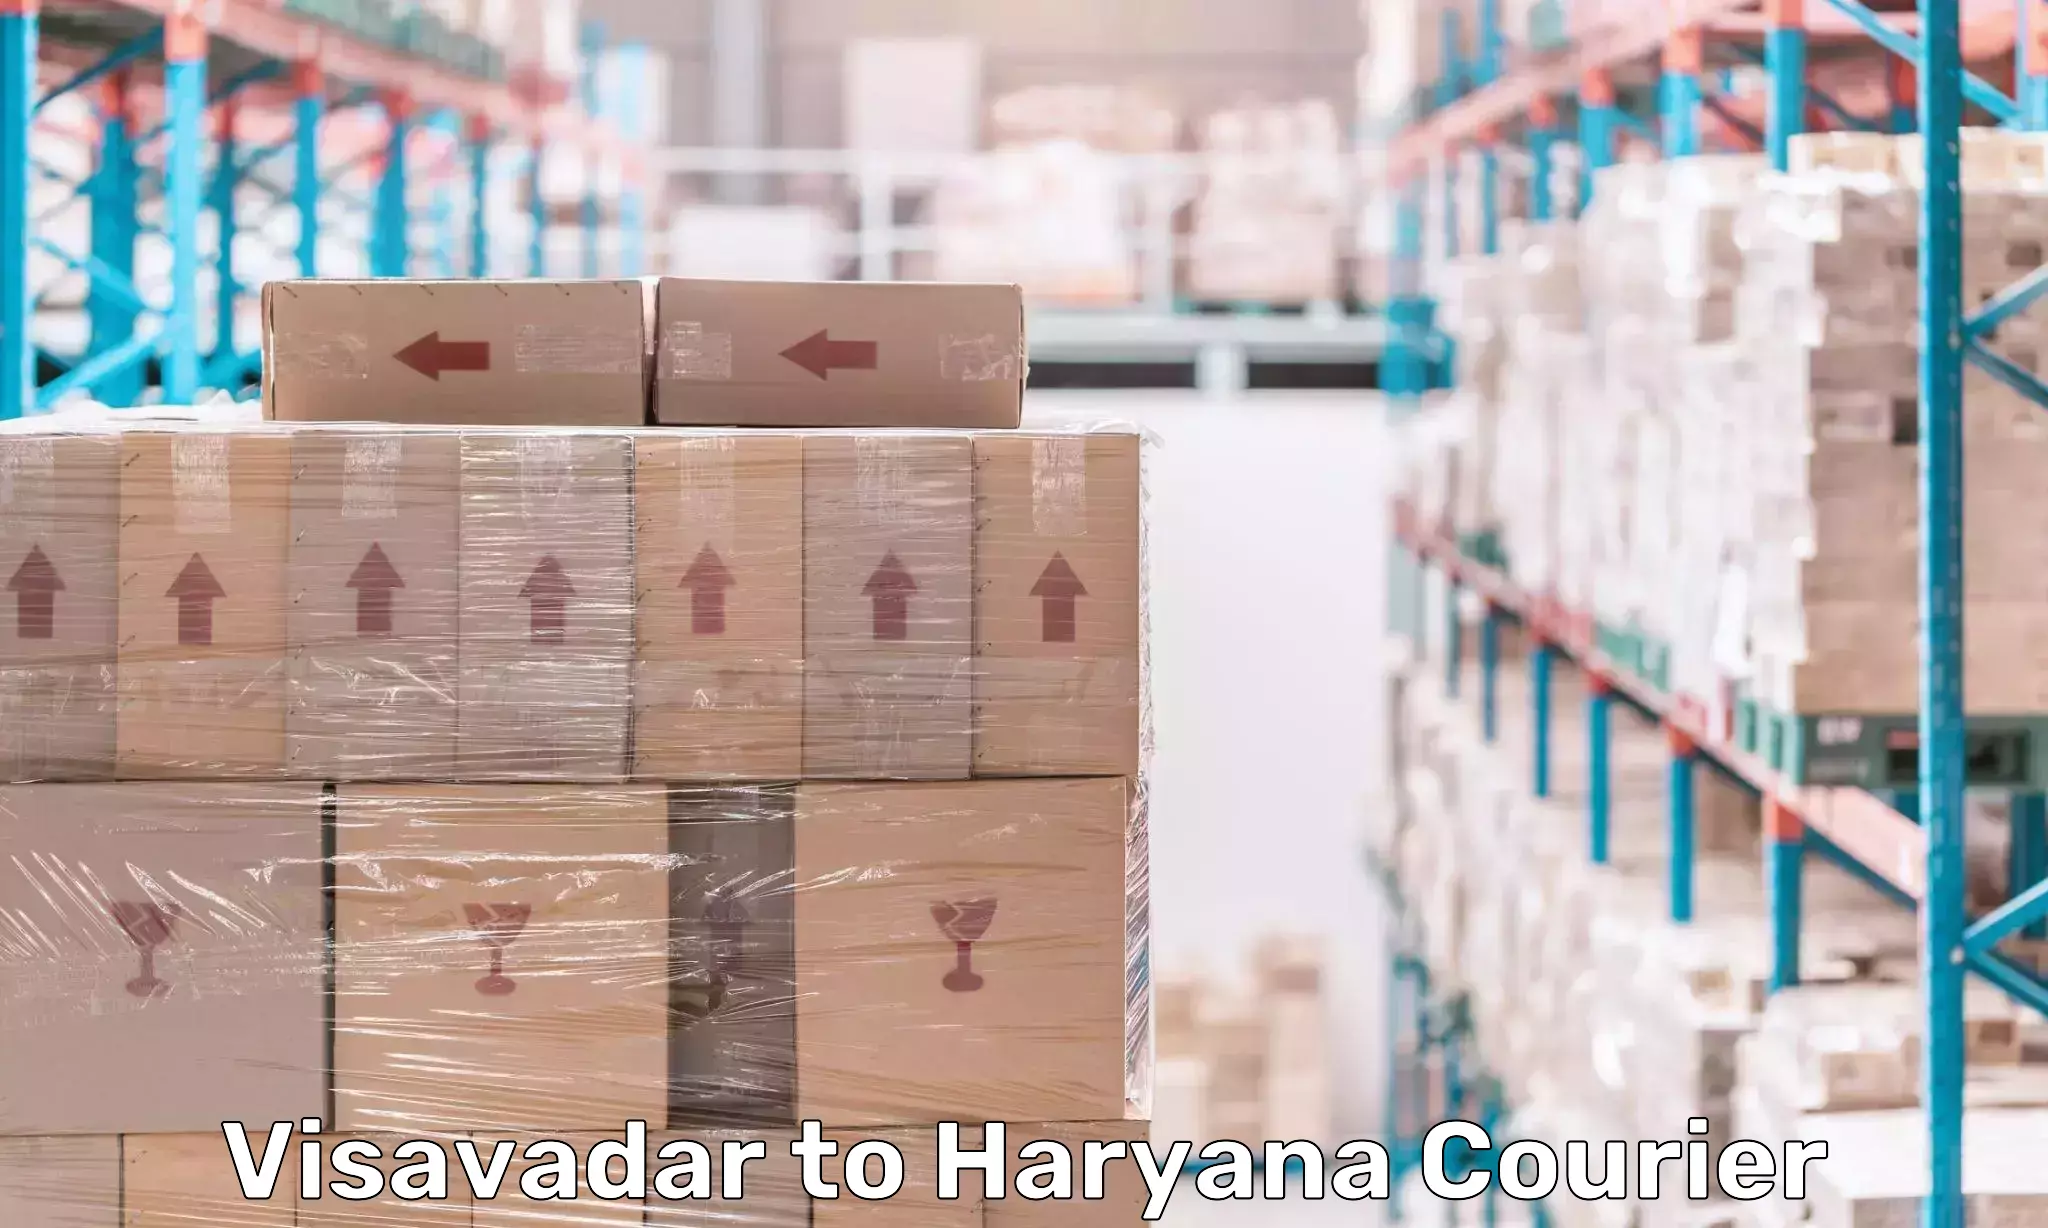 Expedited shipping methods Visavadar to Chaudhary Charan Singh Haryana Agricultural University Hisar